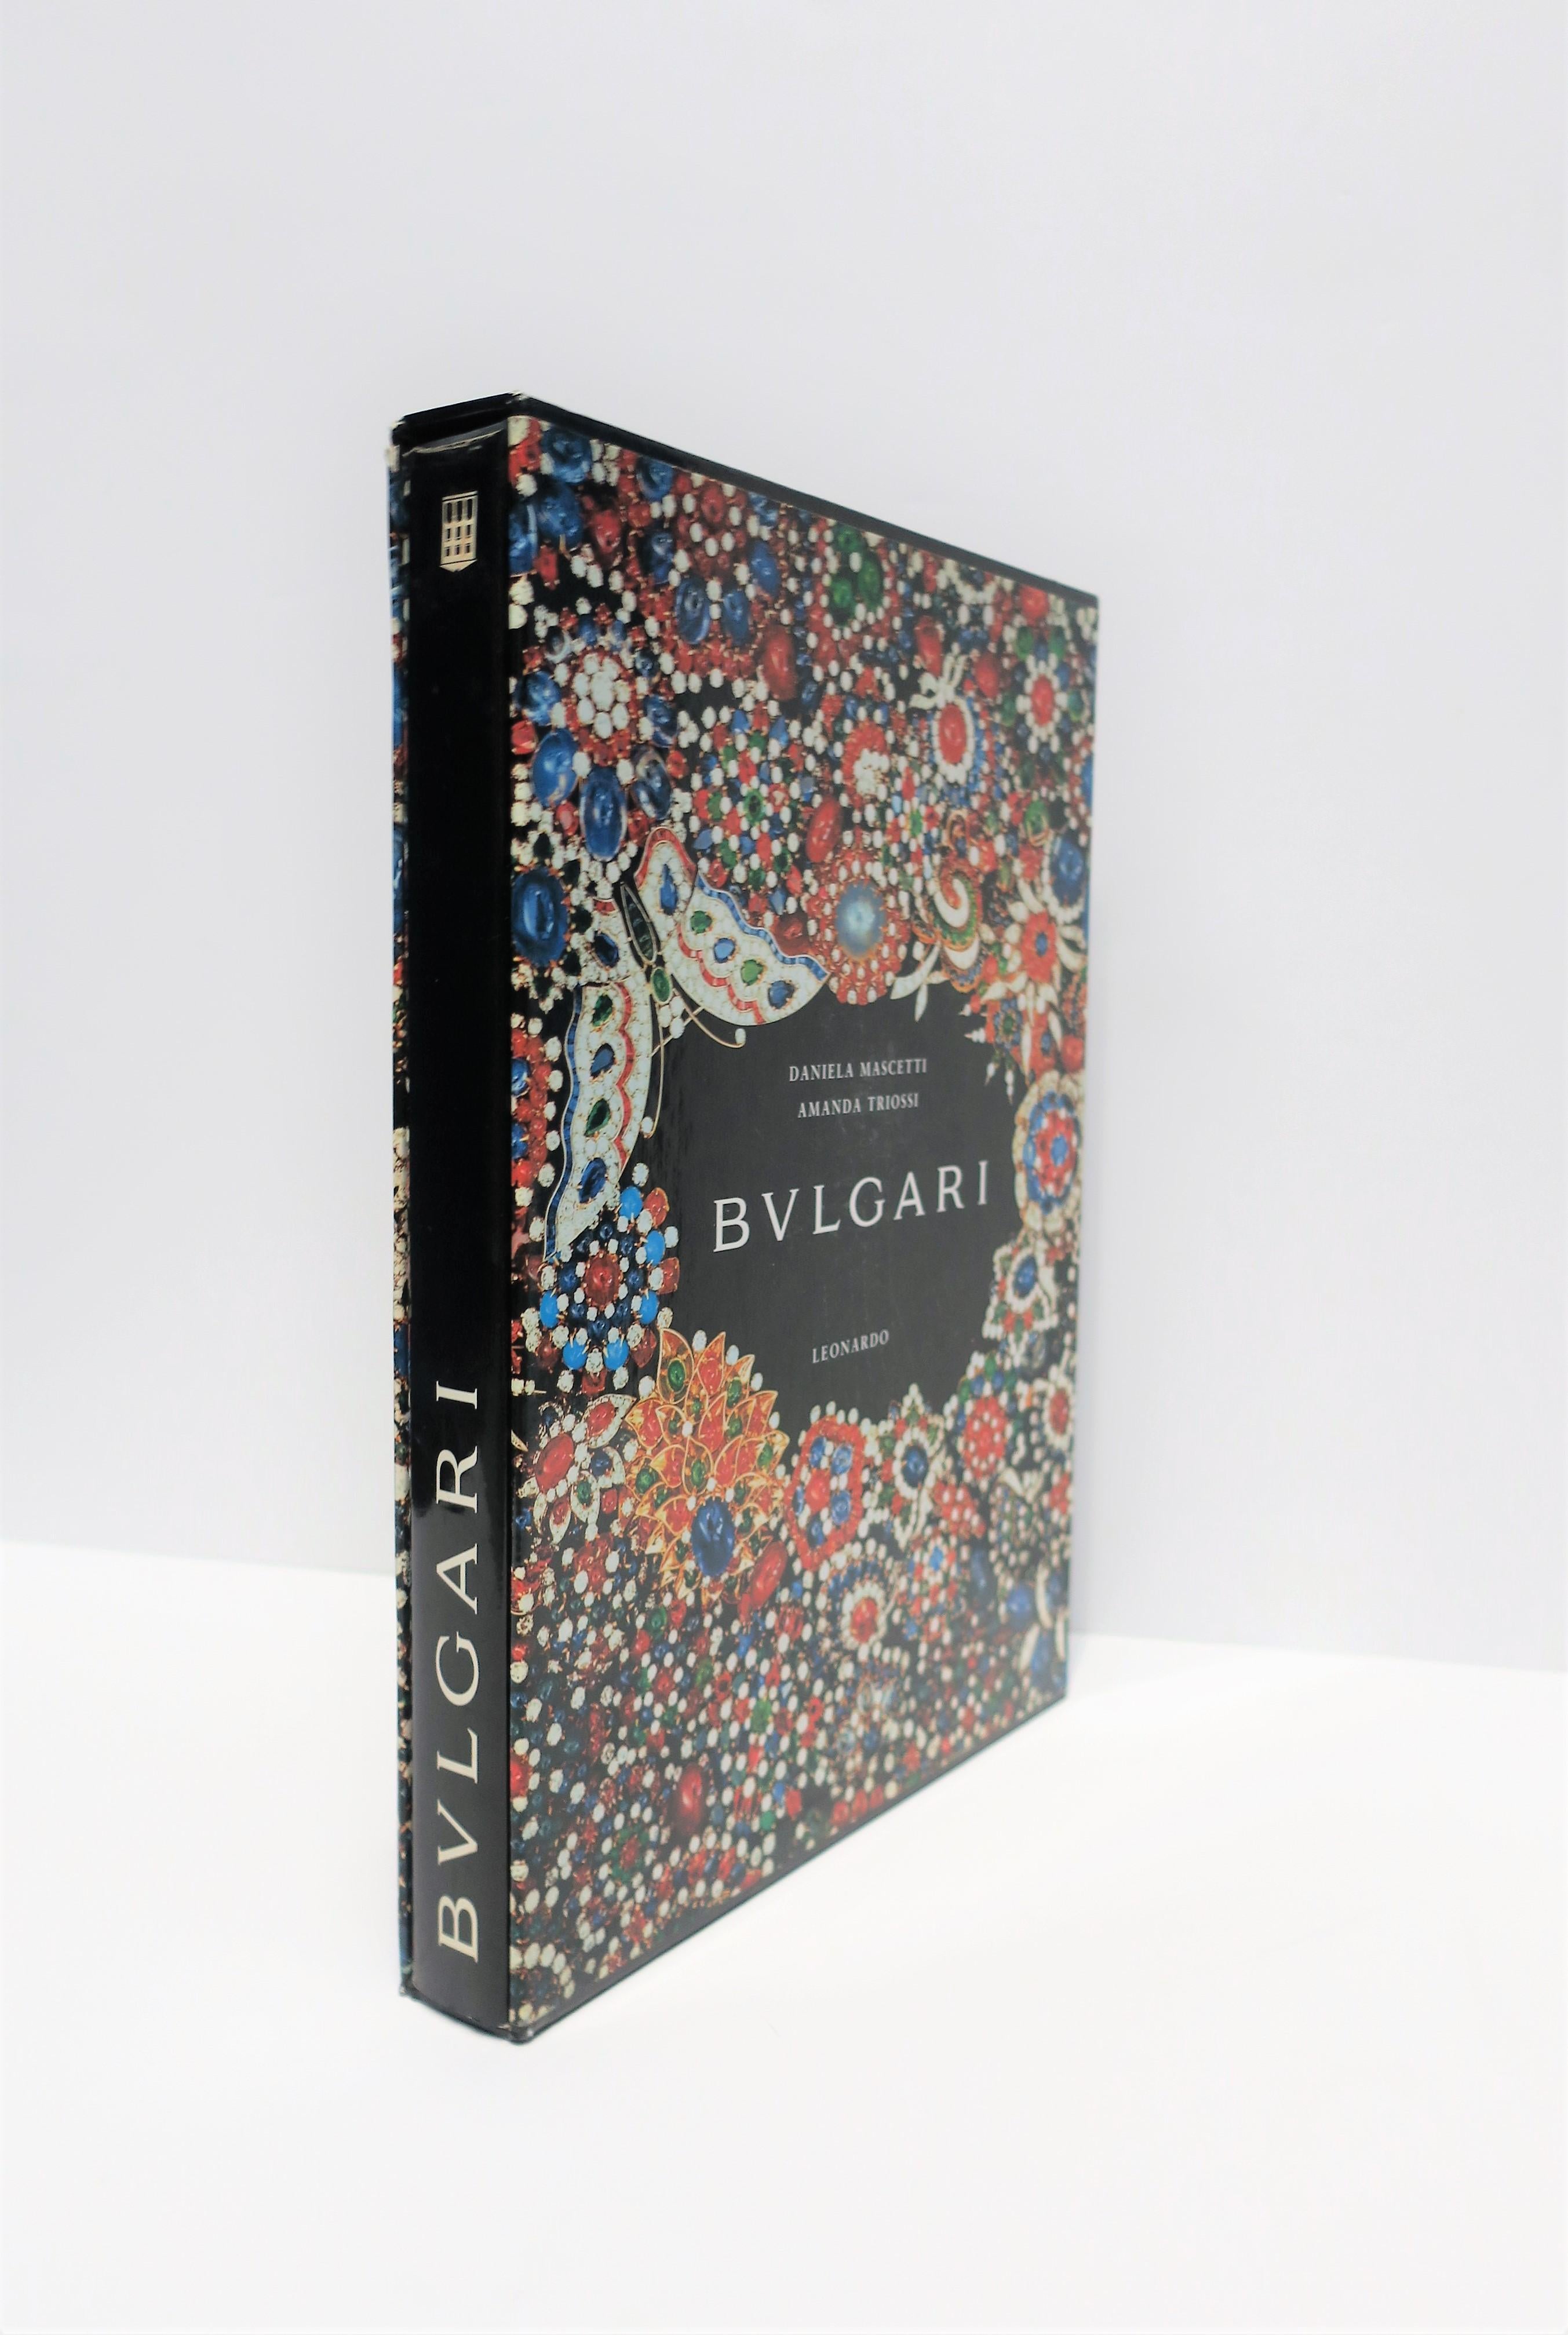 Bvlgari Bulgari High Jewelry Luxury Coffee Table Book, circa 1990s For Sale 9